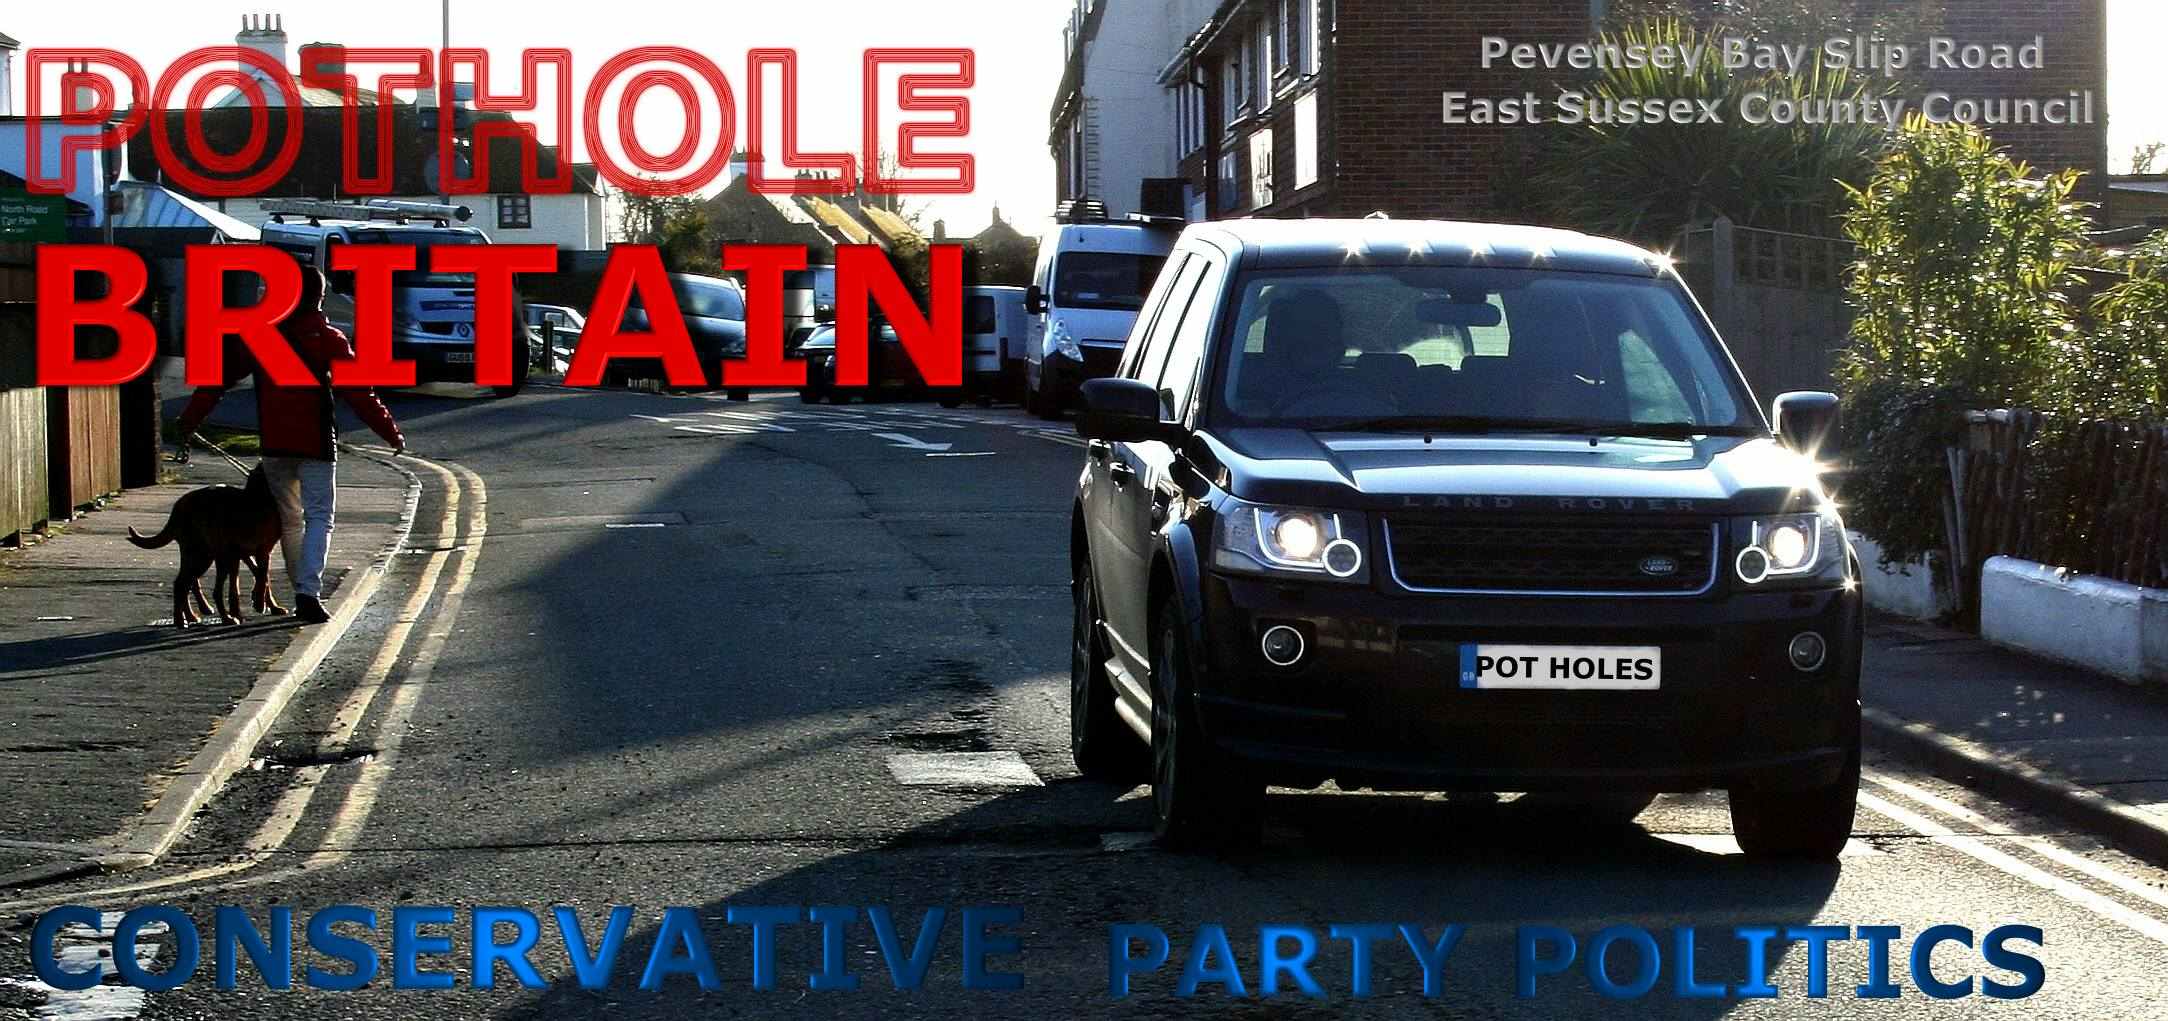 British pothole politics causes dangerous roads and deaths